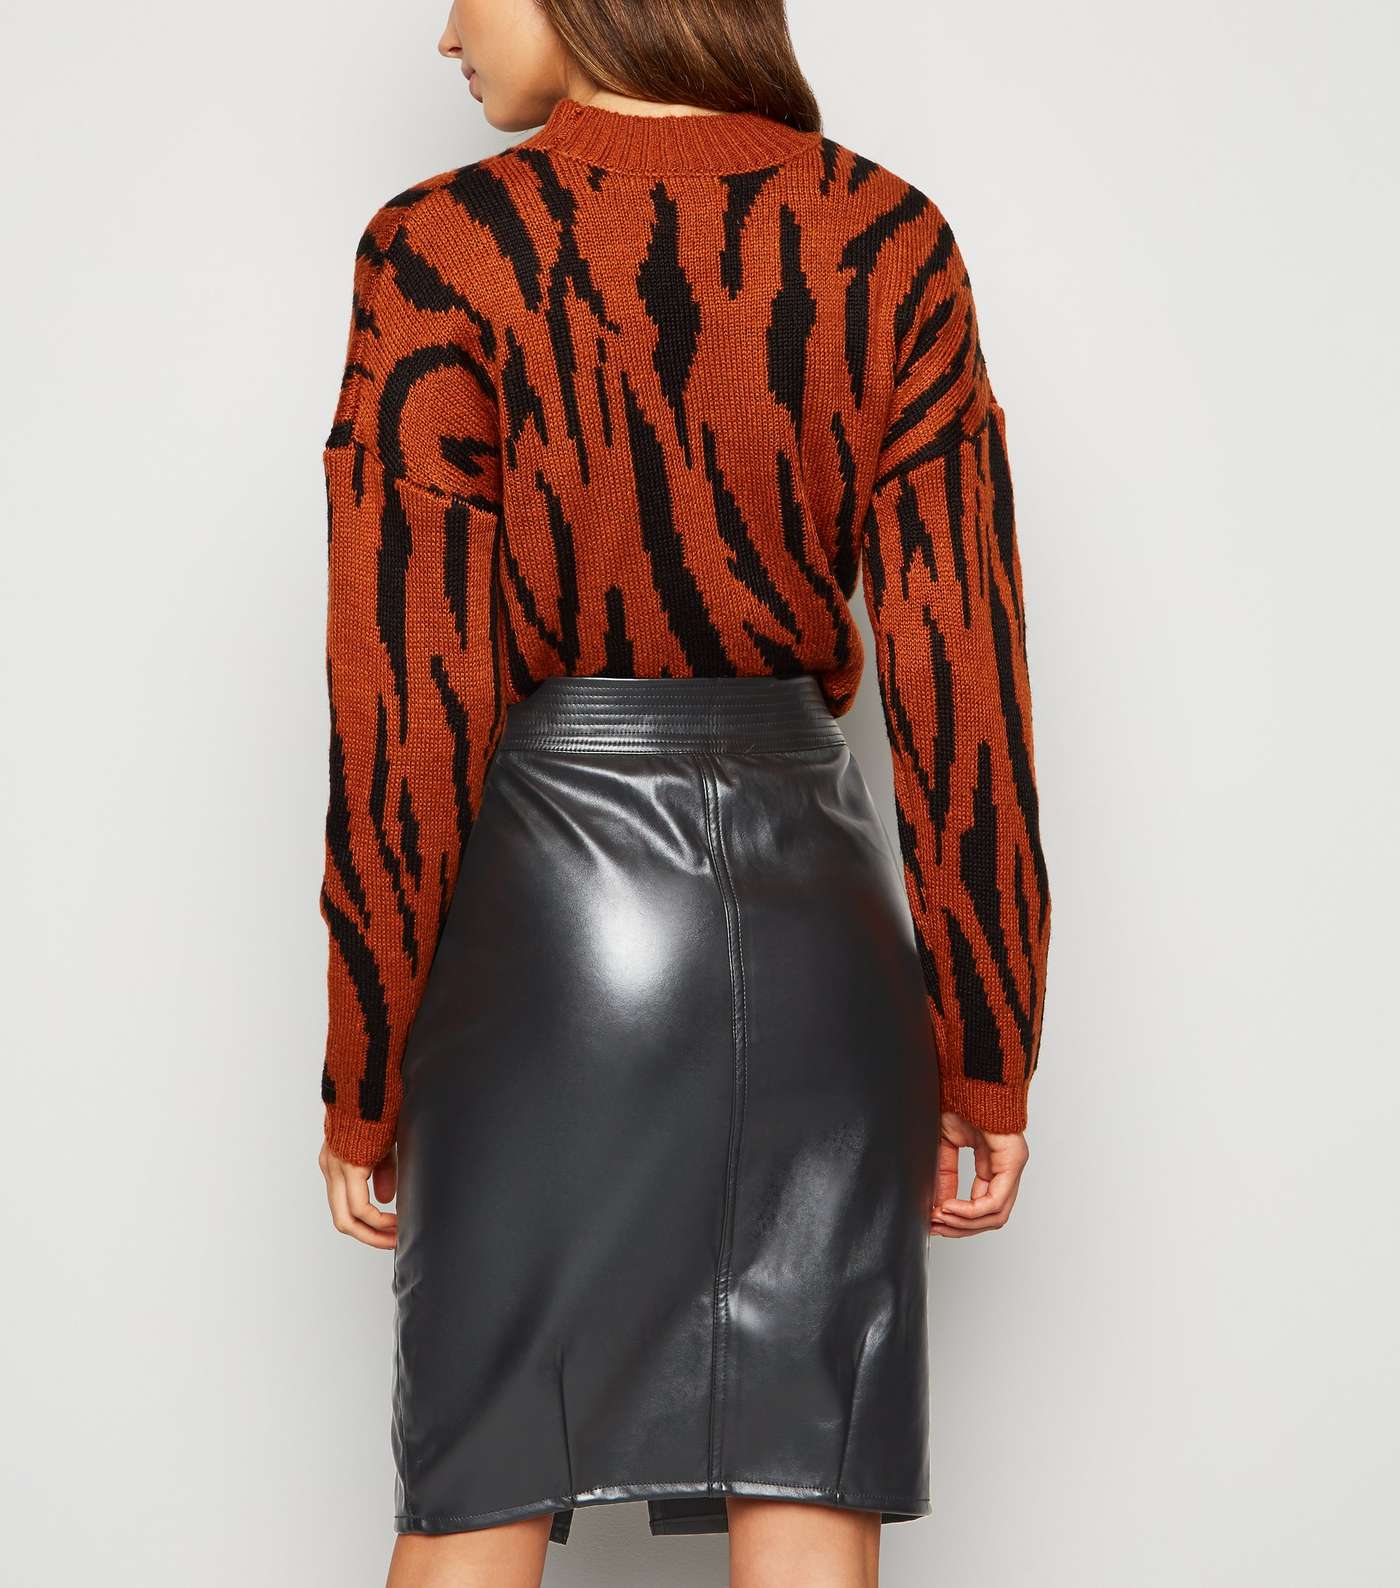 Urban Bliss Black Leather-Look Midi Skirt Image 3